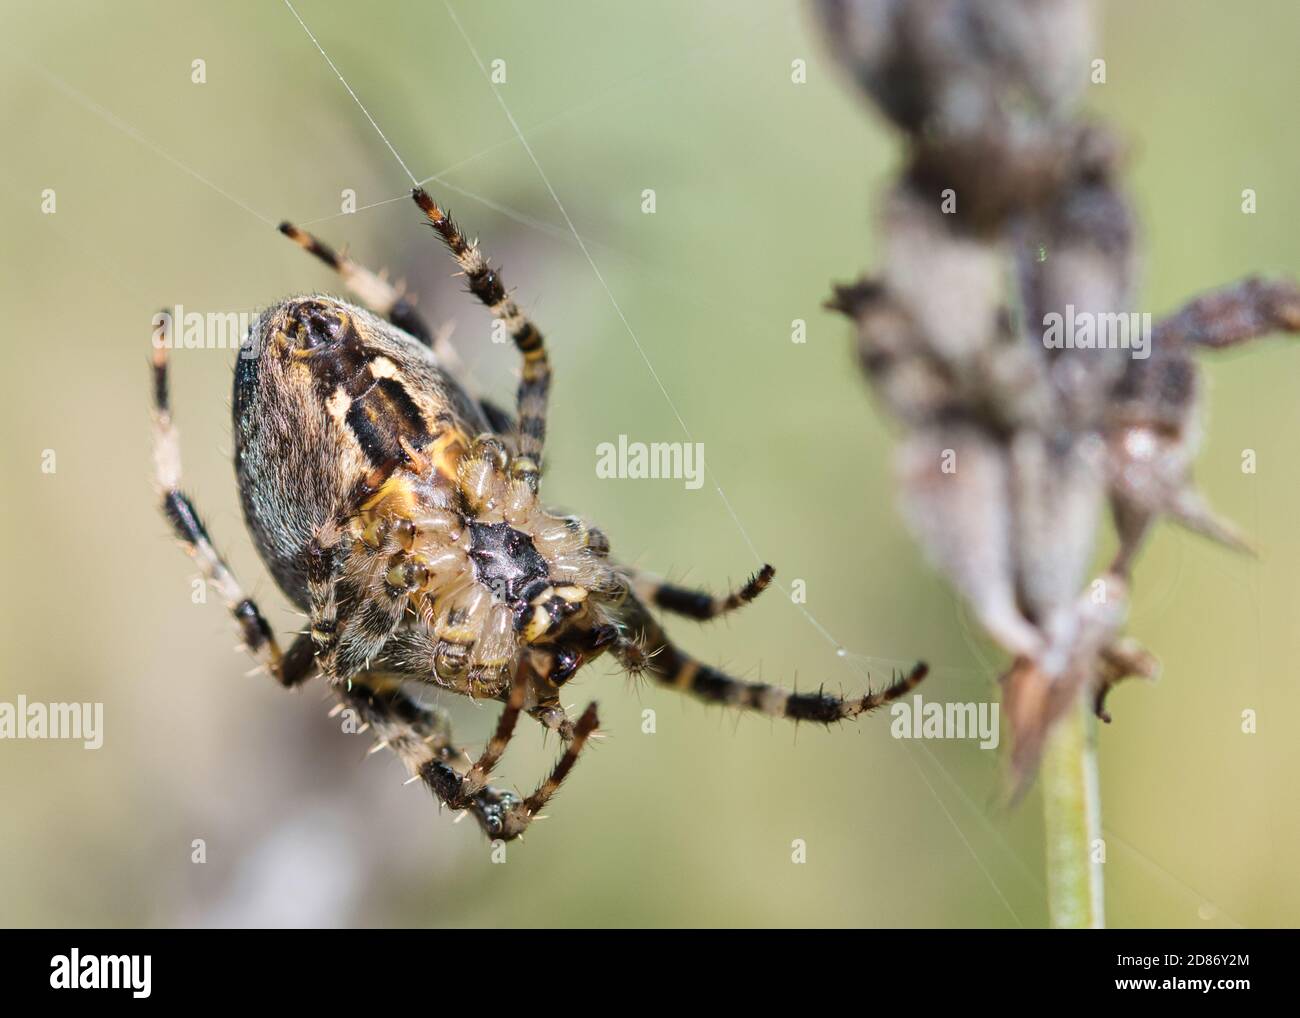 Coronado orbe tejedor araña macro textura, vista inferior, insecto en la red esperando una presa, detallado, con textura borrosa fondo verde pálido Foto de stock